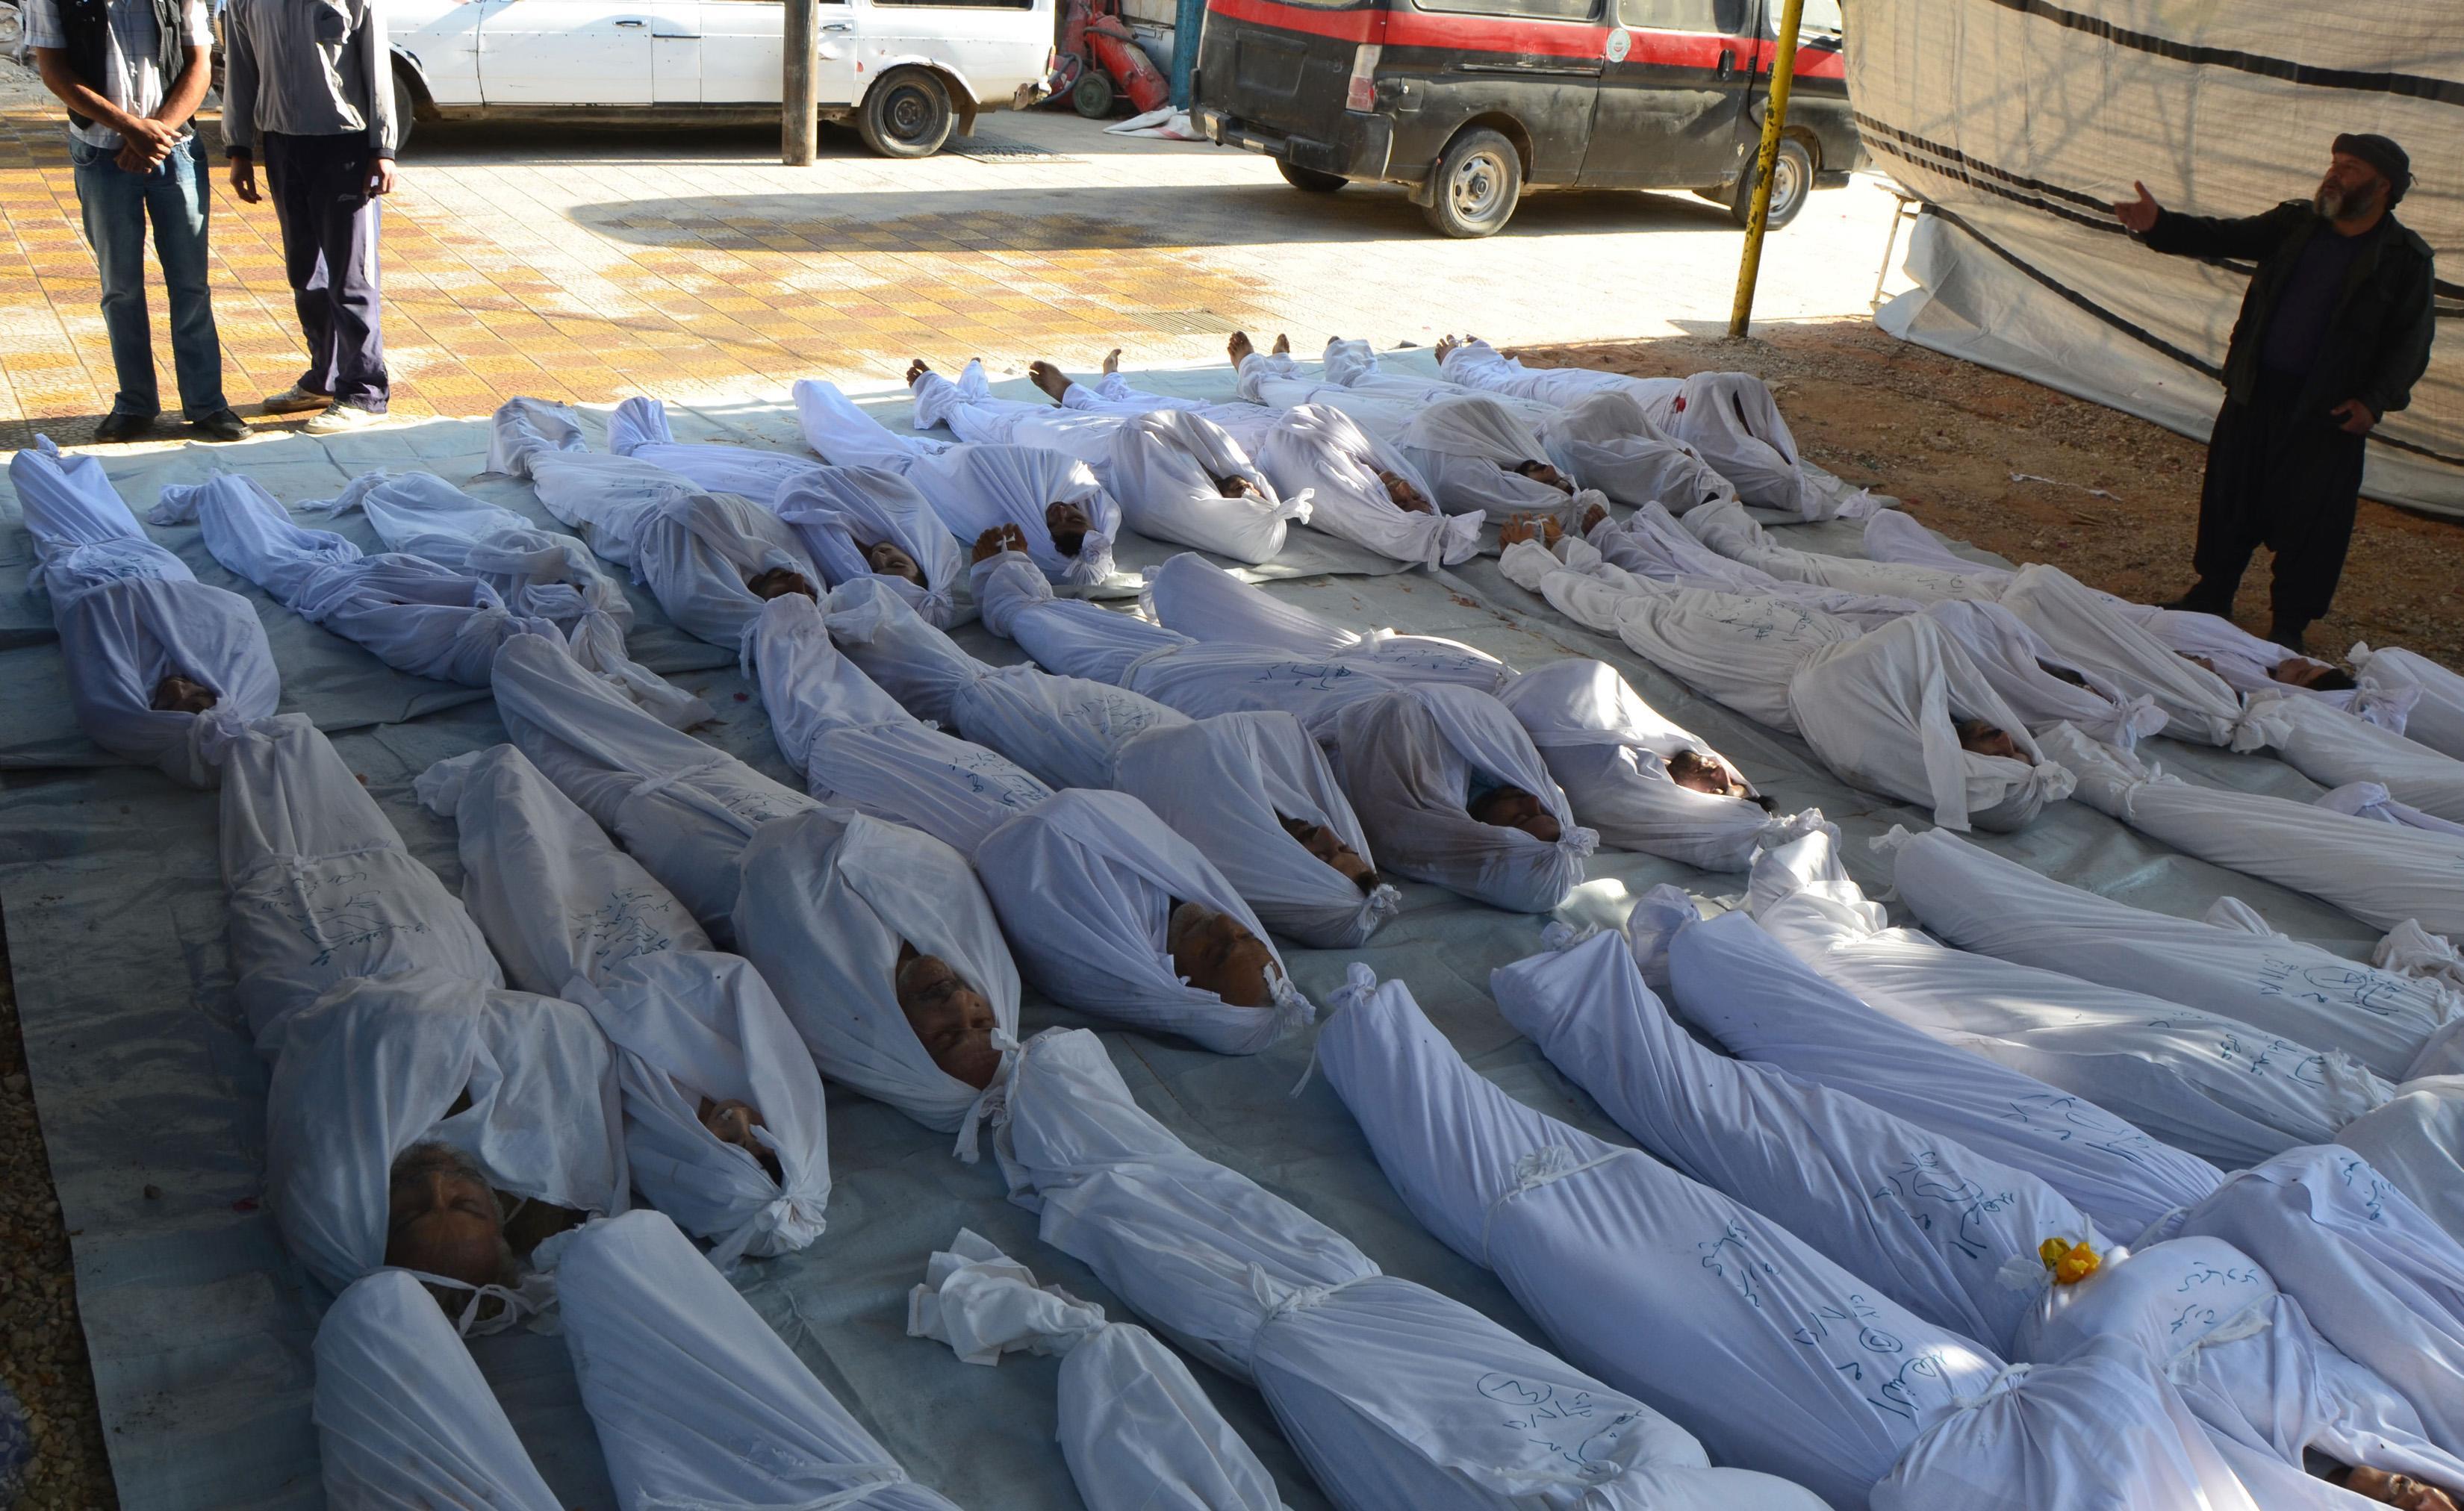 “Σφαγή” αμάχων στη Συρία – 650 οι νεκροί από τη χημική επίθεση λέει η αντιπολίτευση